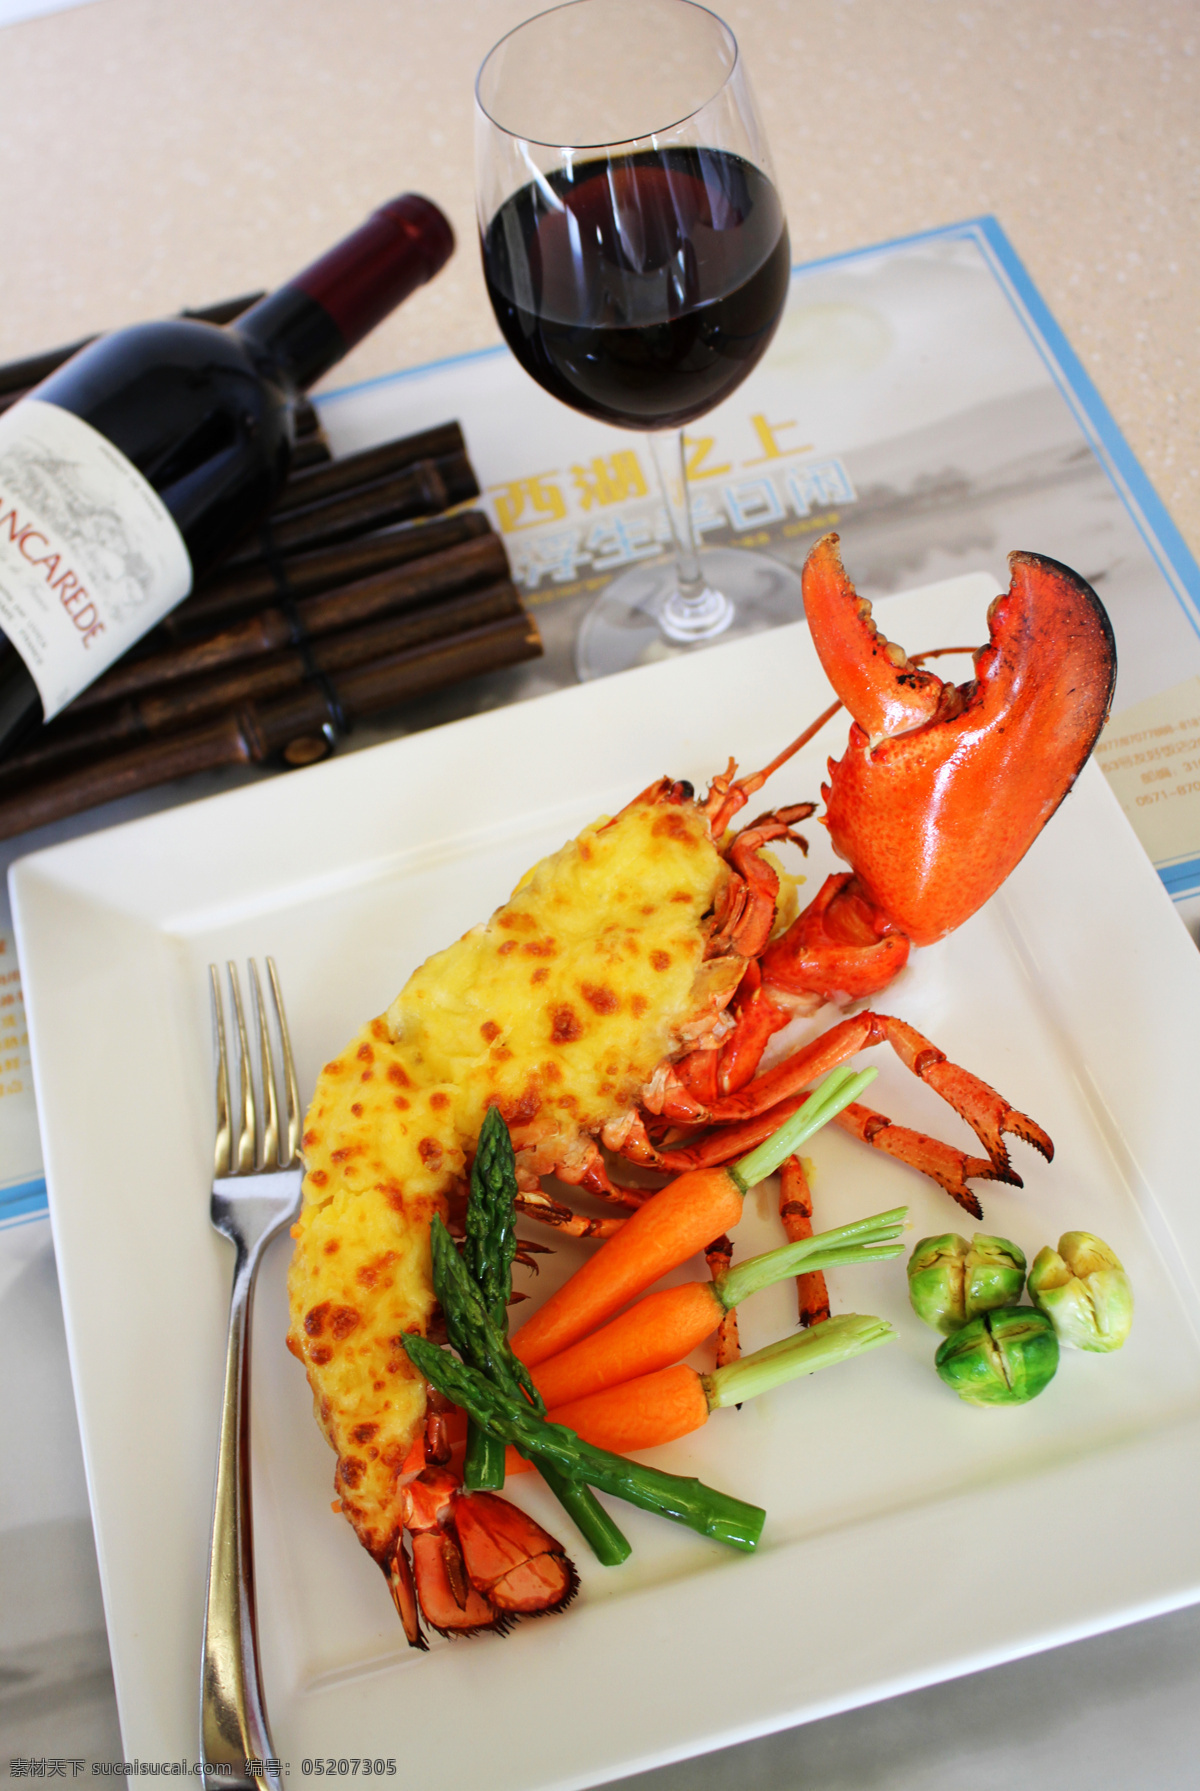 餐饮美食 法国 法式 红酒 龙虾 美食 美味 焗 法式焗龙虾 西餐 食物 西餐美食 psd源文件